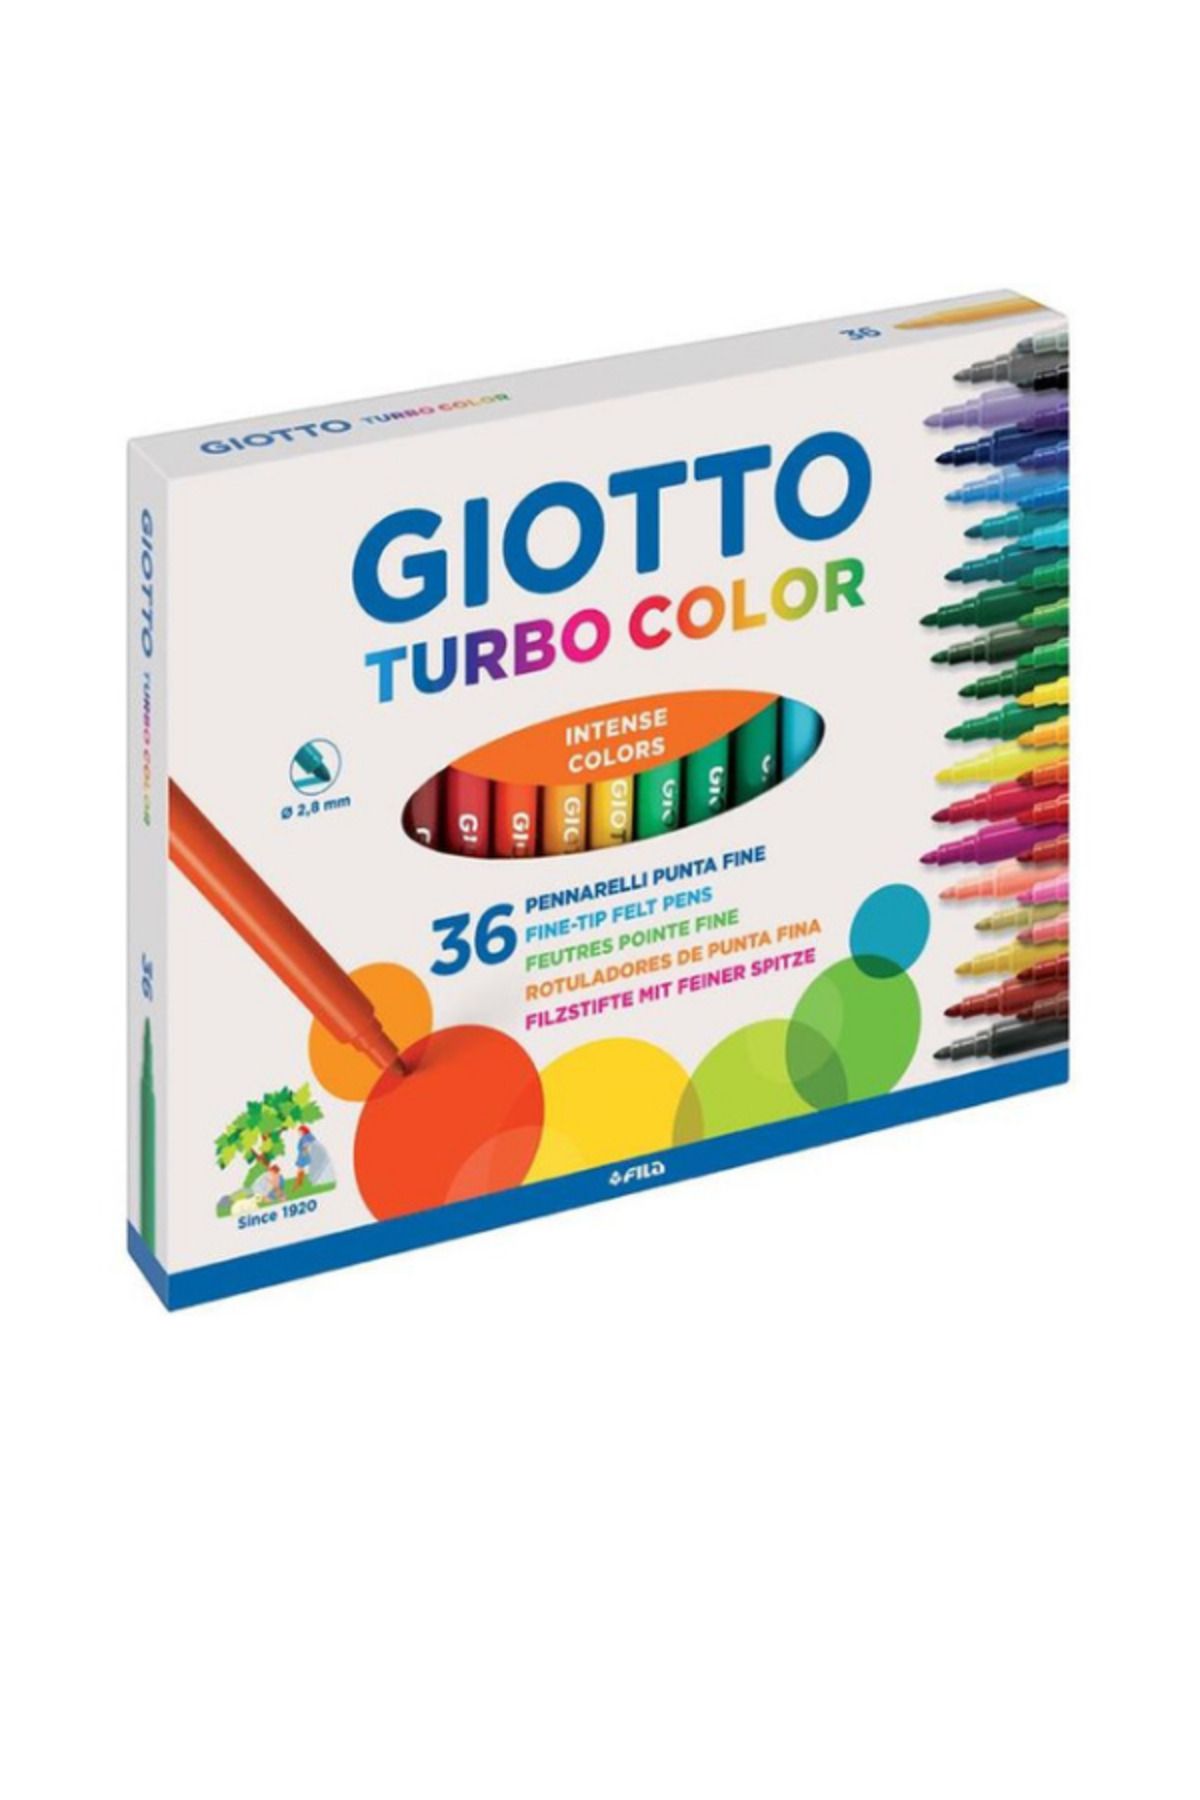 Giotto Gİotto turbo color 36LI